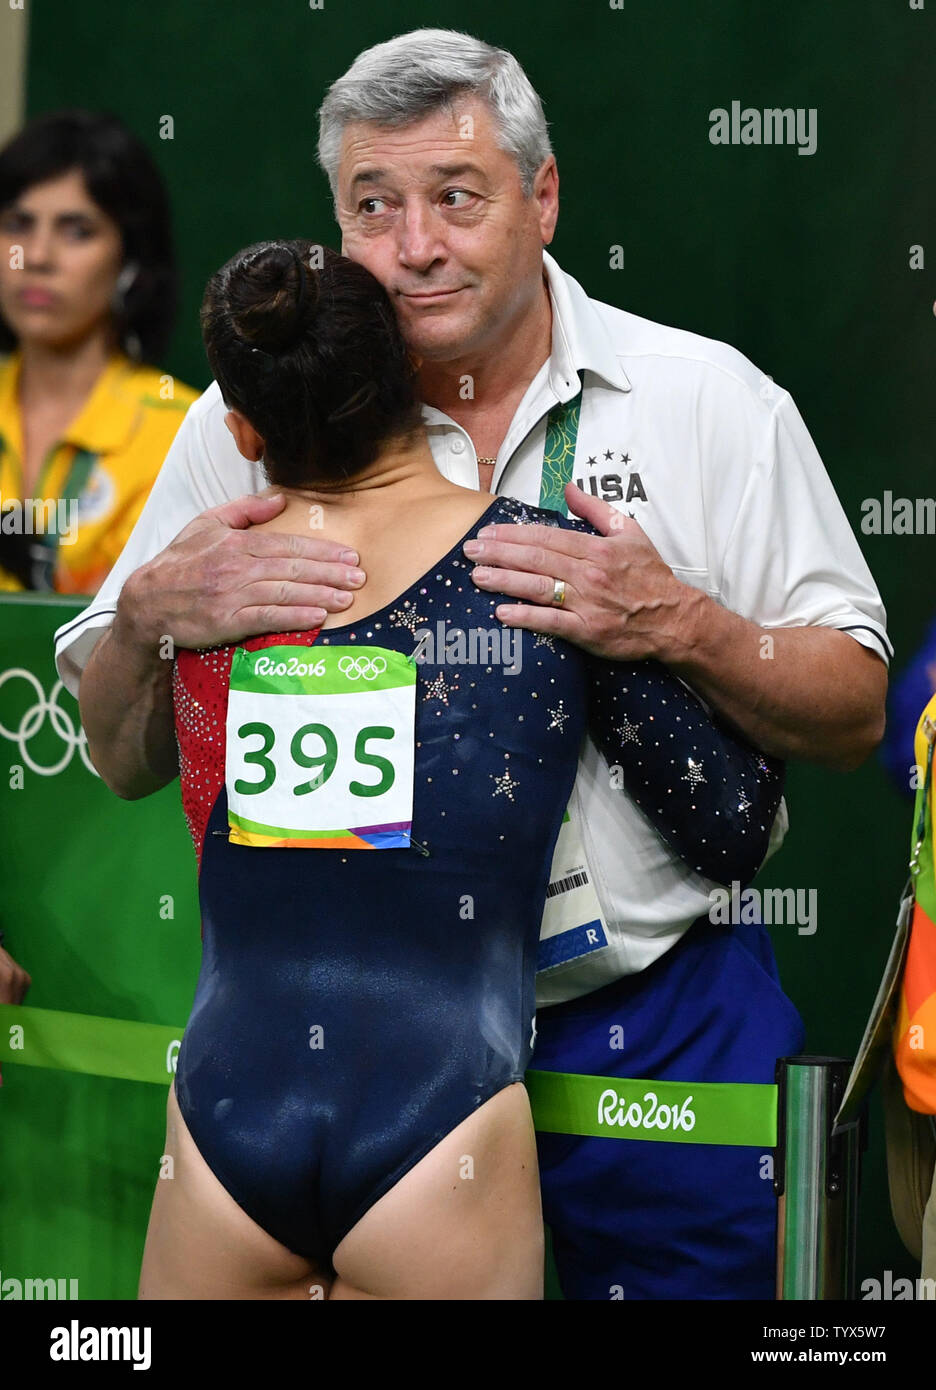 American gymnast Aly Raisman wird von Coach Mihai Brestyan nach fast fällt der Strahl in der schwebebalken Qualifikationen im Rio olympische Sommerspiele 2016 in Rio de Janeiro, Brasilien, am 6. August 2016 getröstet. Foto von Kevin Dietsch/UPI Stockfoto